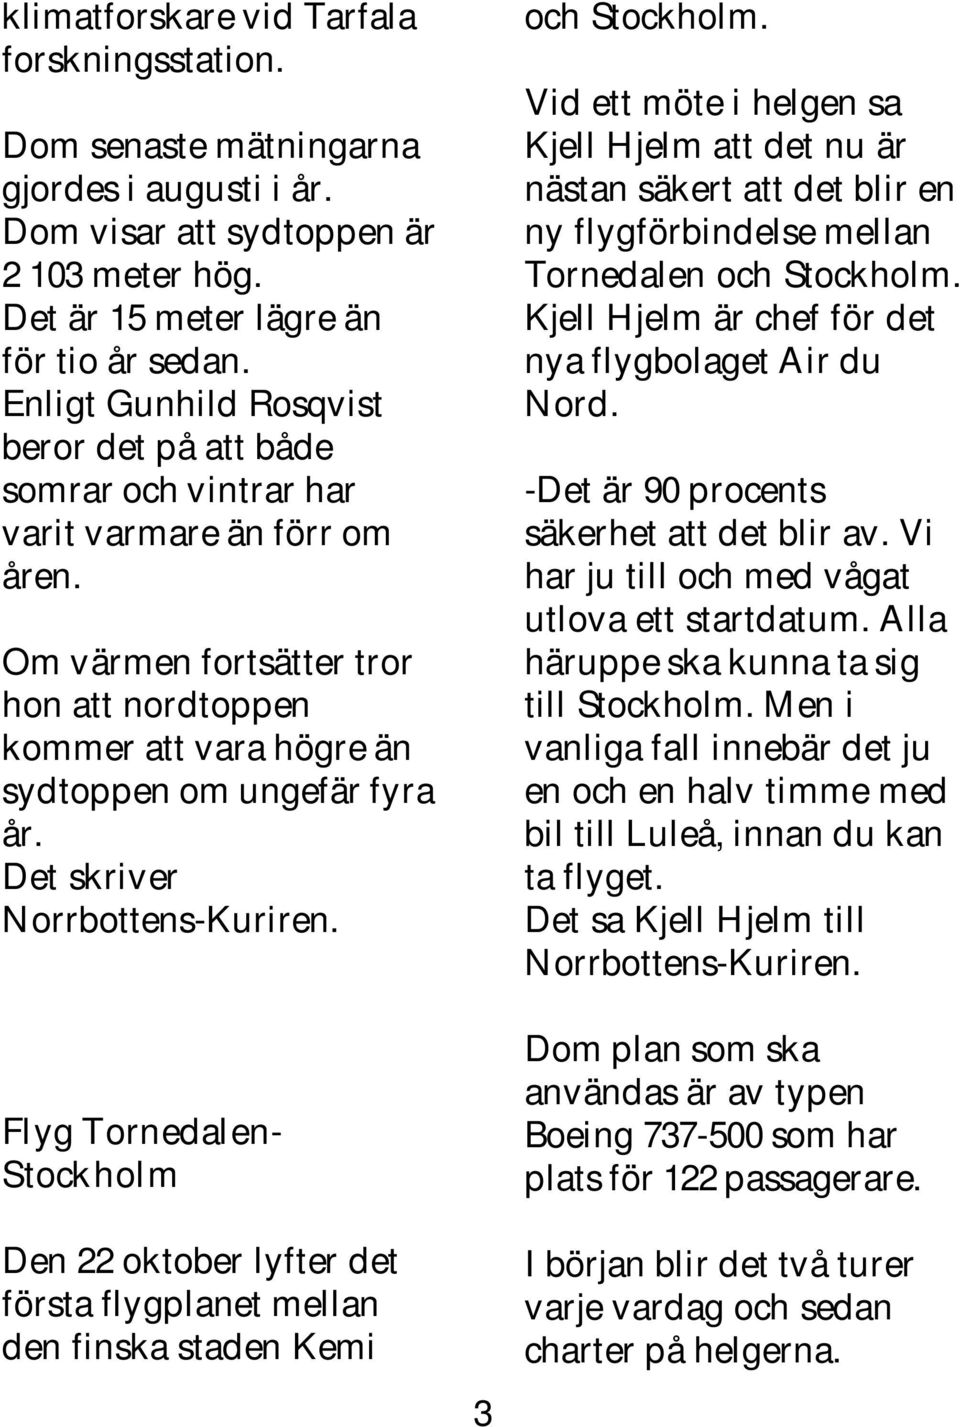 Det skriver Norrbottens-Kuriren. Flyg Tornedalen- Stockholm Den 22 oktober lyfter det första flygplanet mellan den finska staden Kemi 3 och Stockholm.